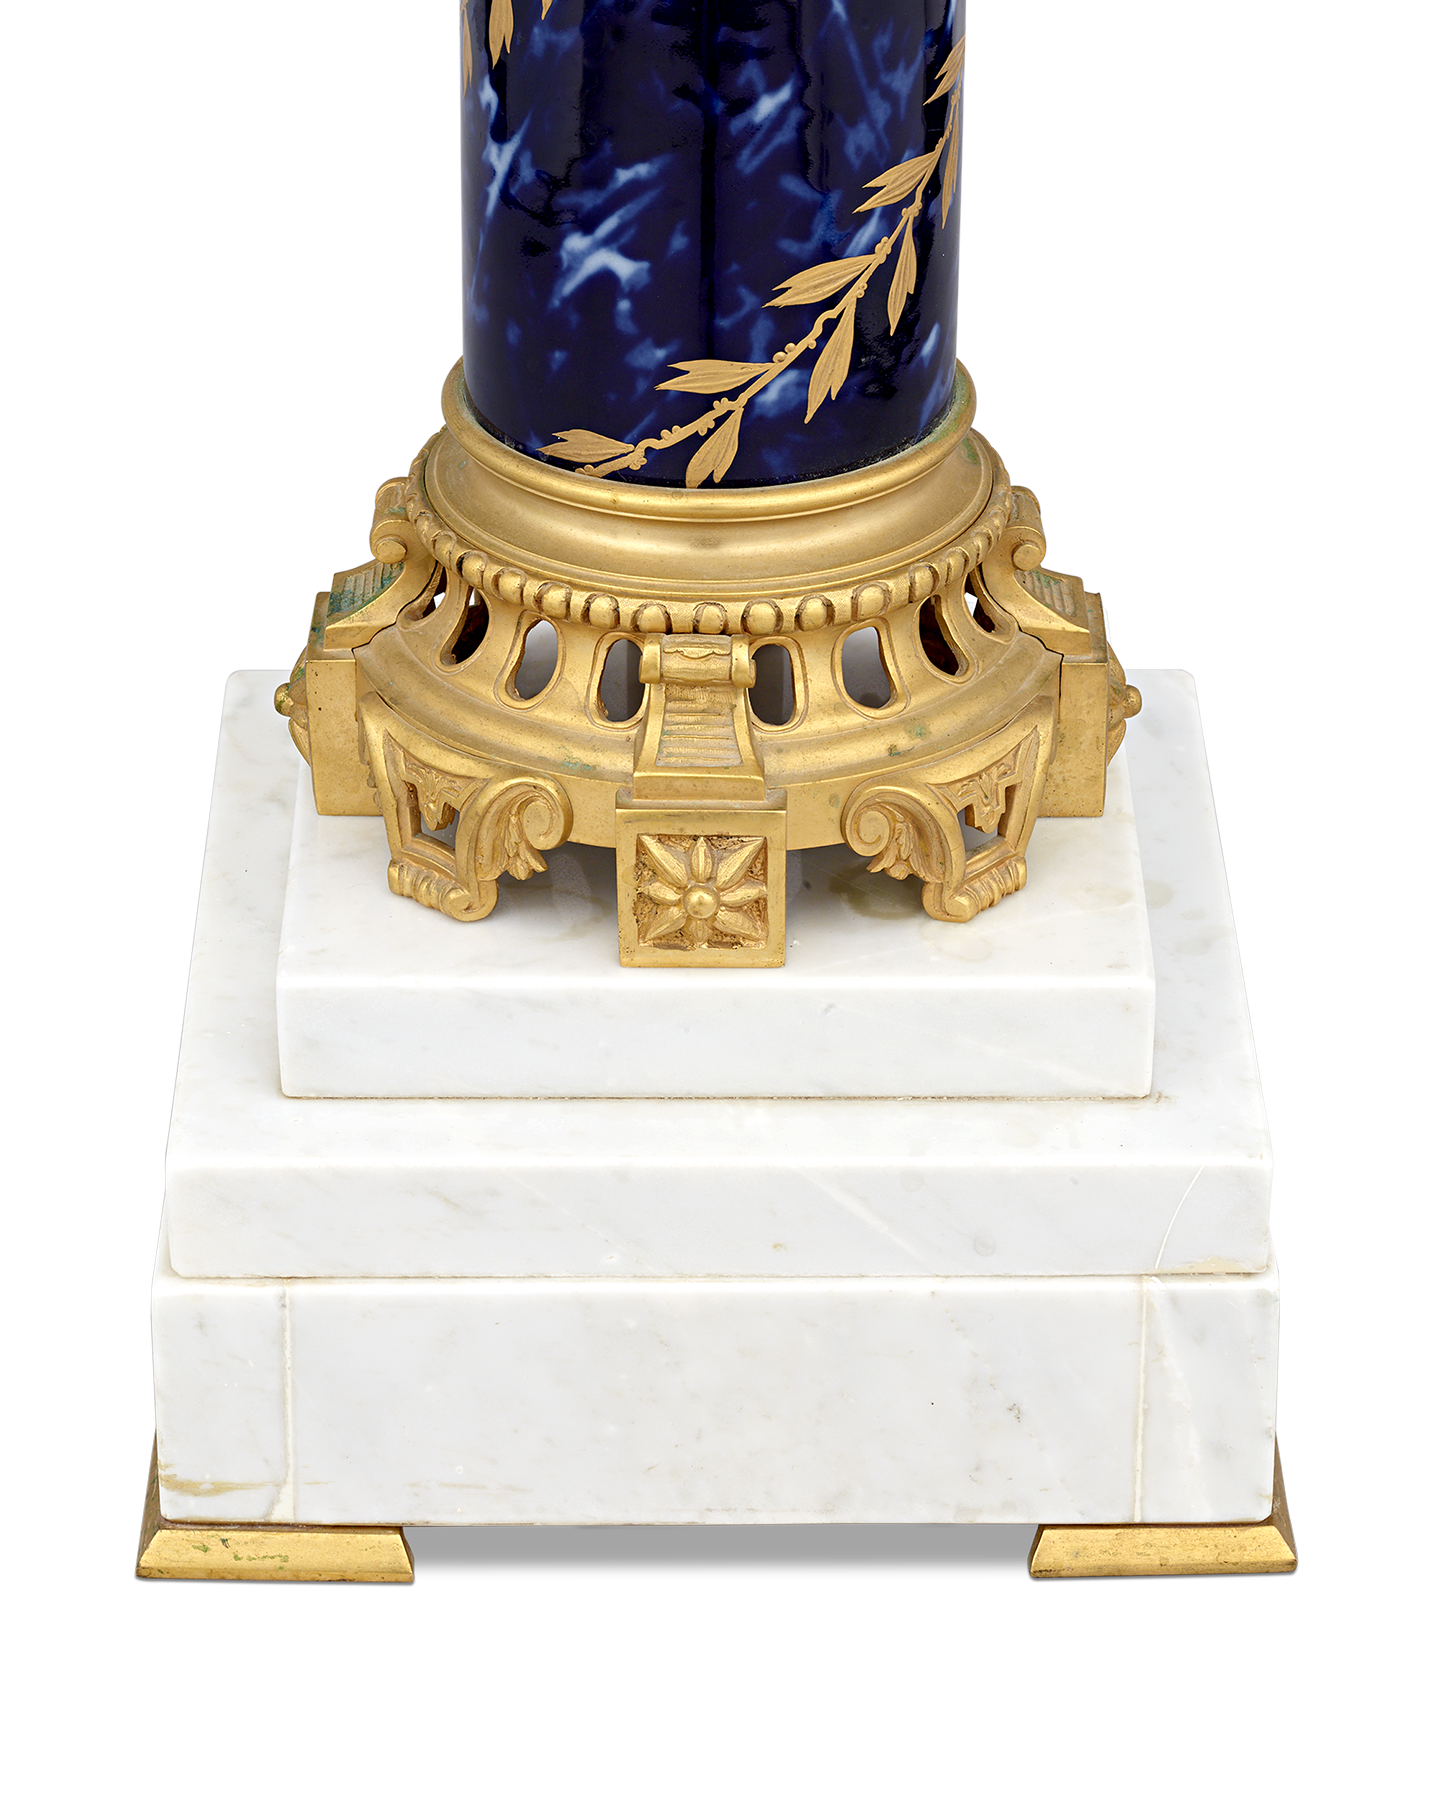 Sèvres-Style Porcelain Pedestal